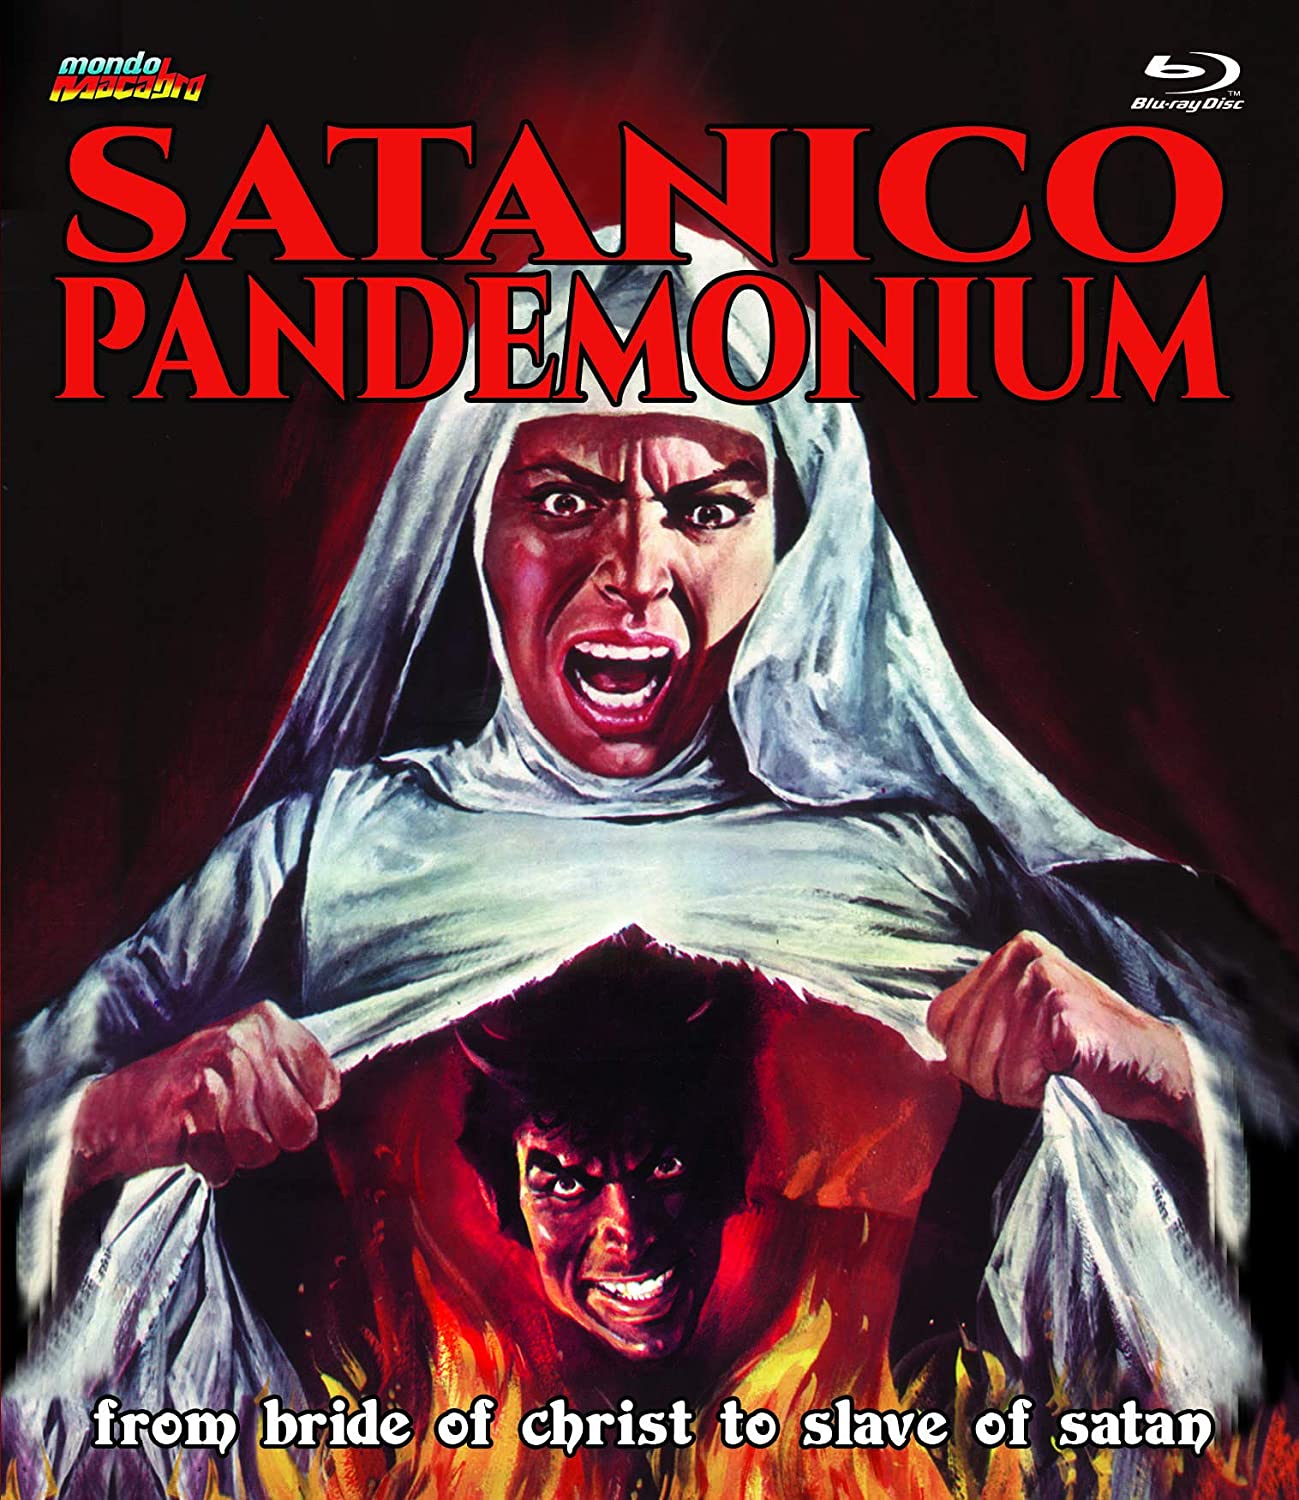 Satanico Pandemonium Blu-Ray Blu-Ray